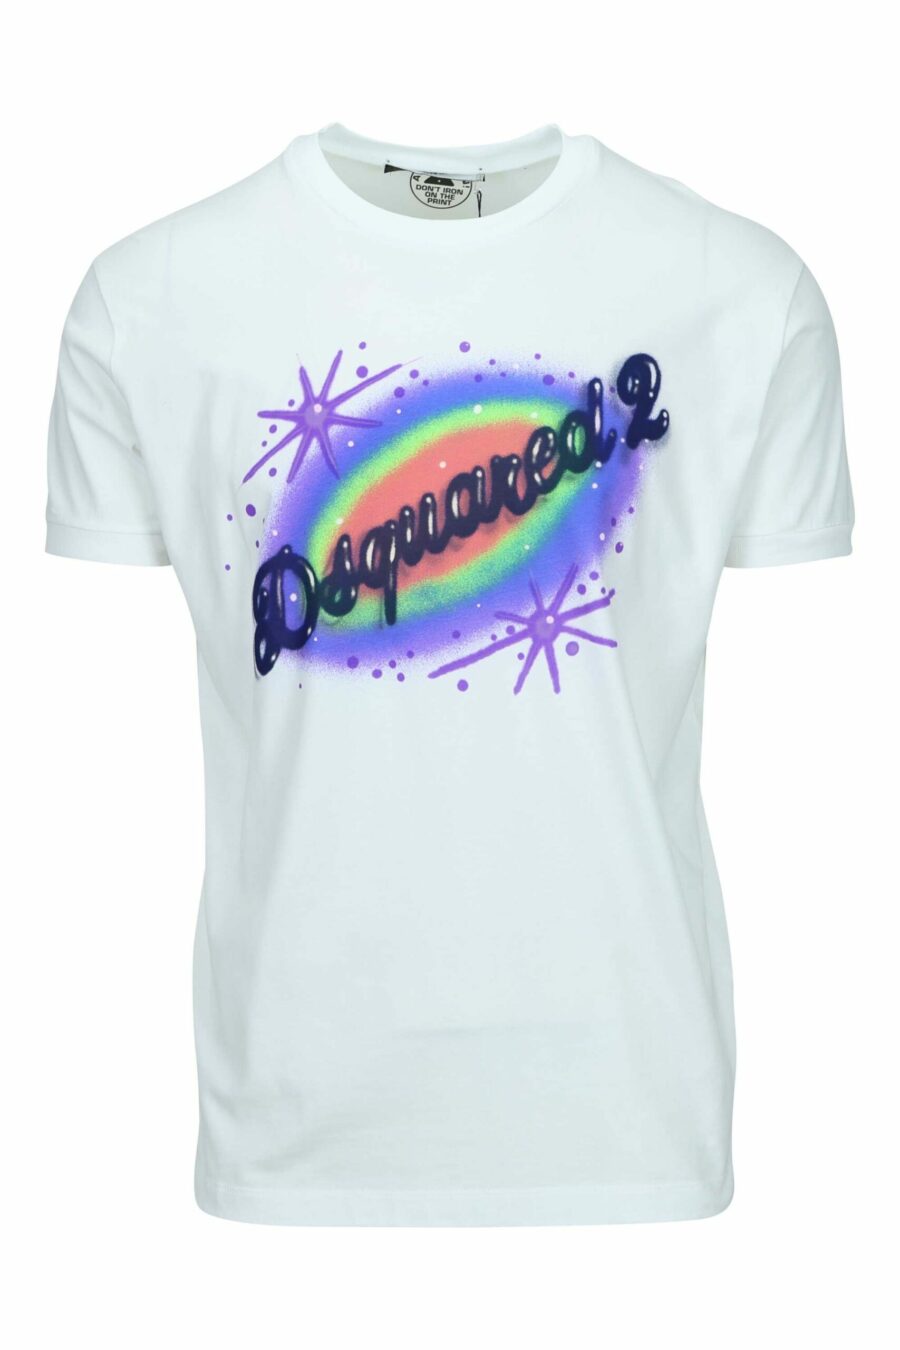 T-shirt branca com maxilogo de graffiti multicolorido - 8054148570620 scaled